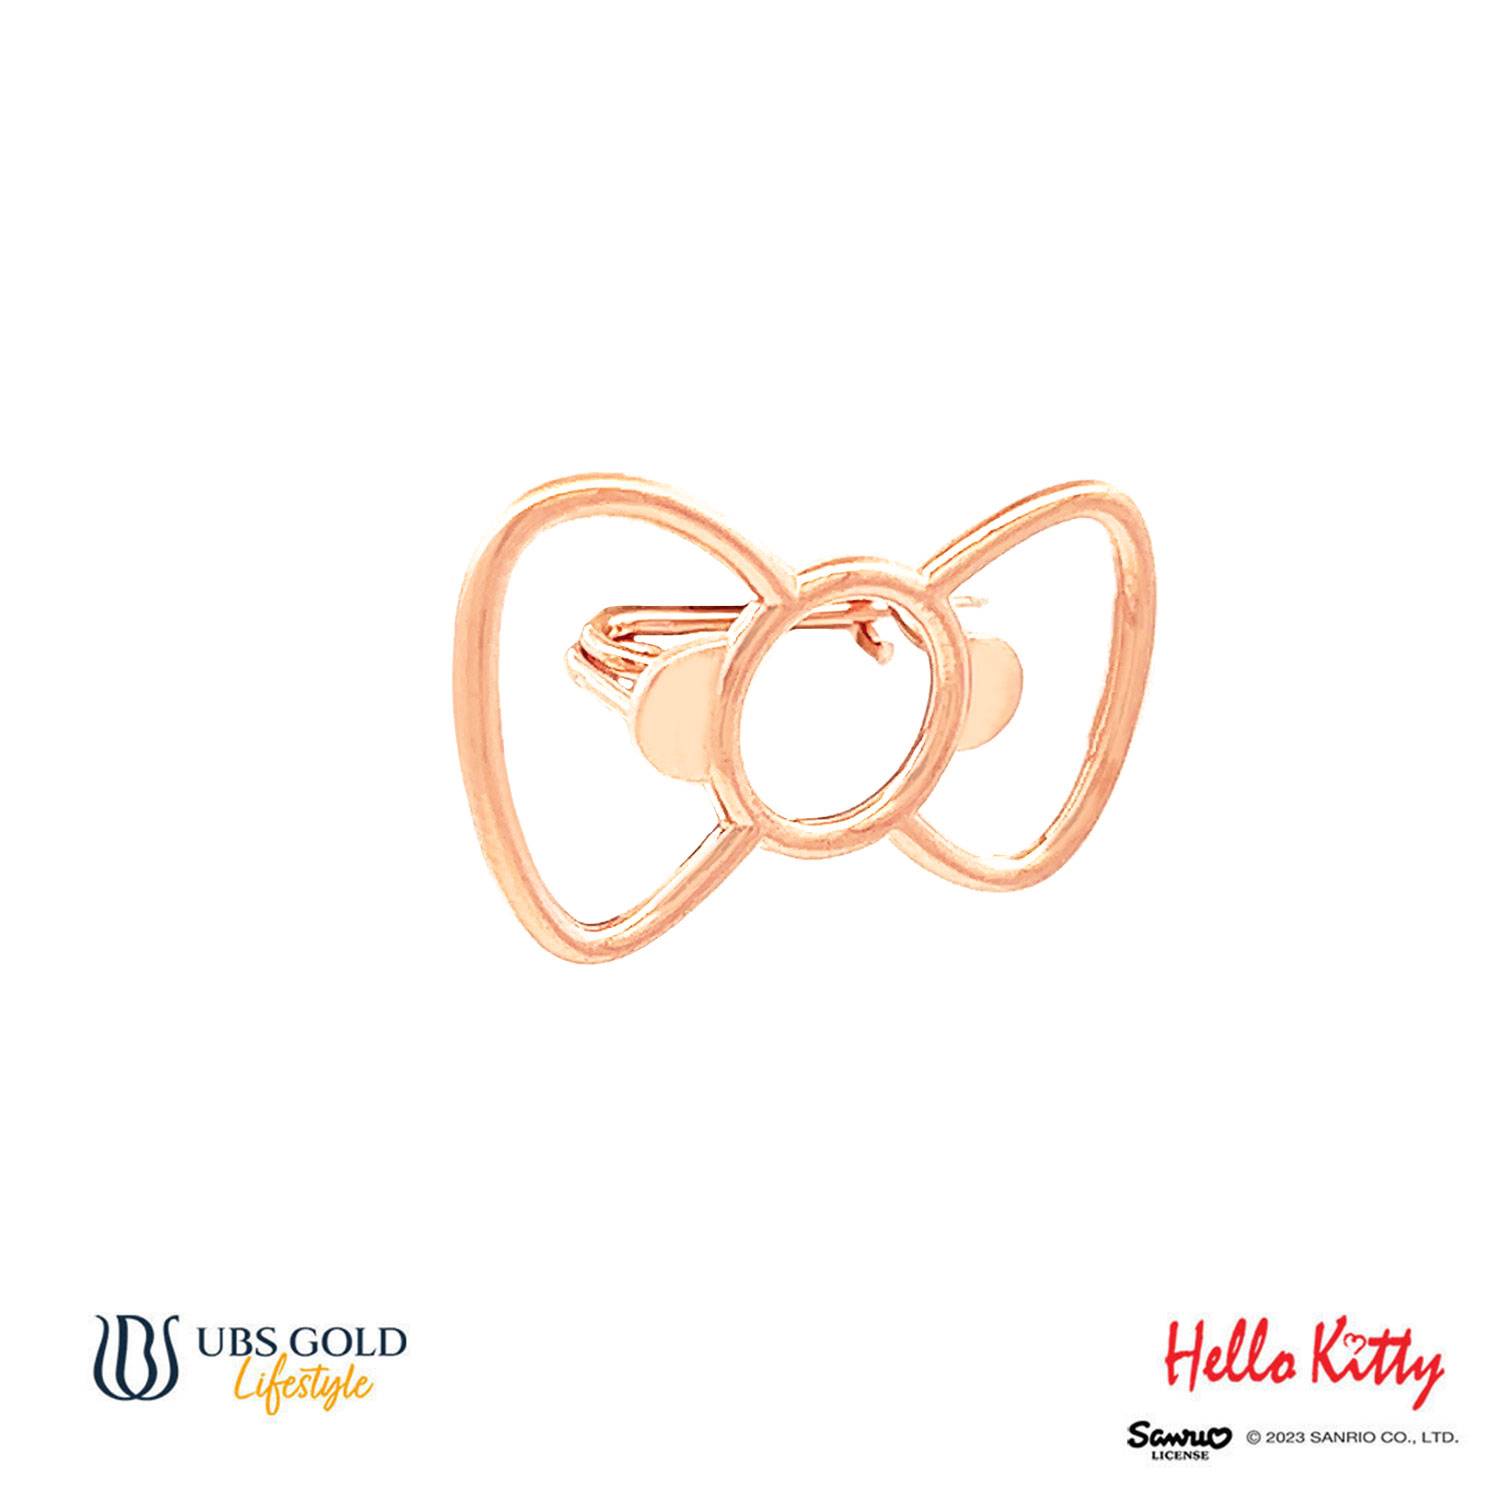 UBS Pin Emas Sanrio Hello Kitty - Cbz0001 - 17K